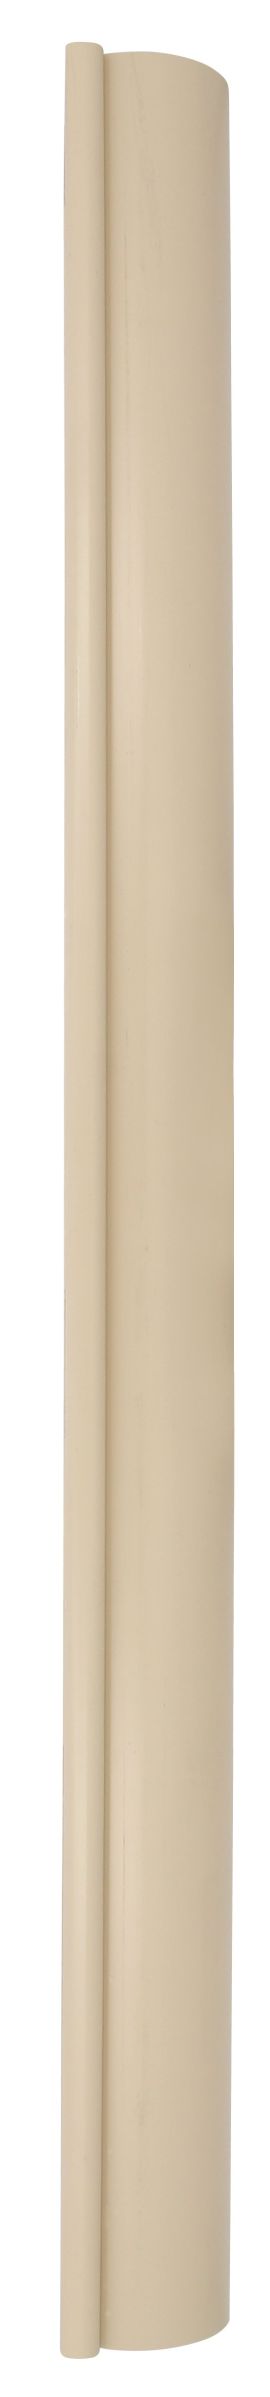 Profile de gouttiere type 16 en 2m sable